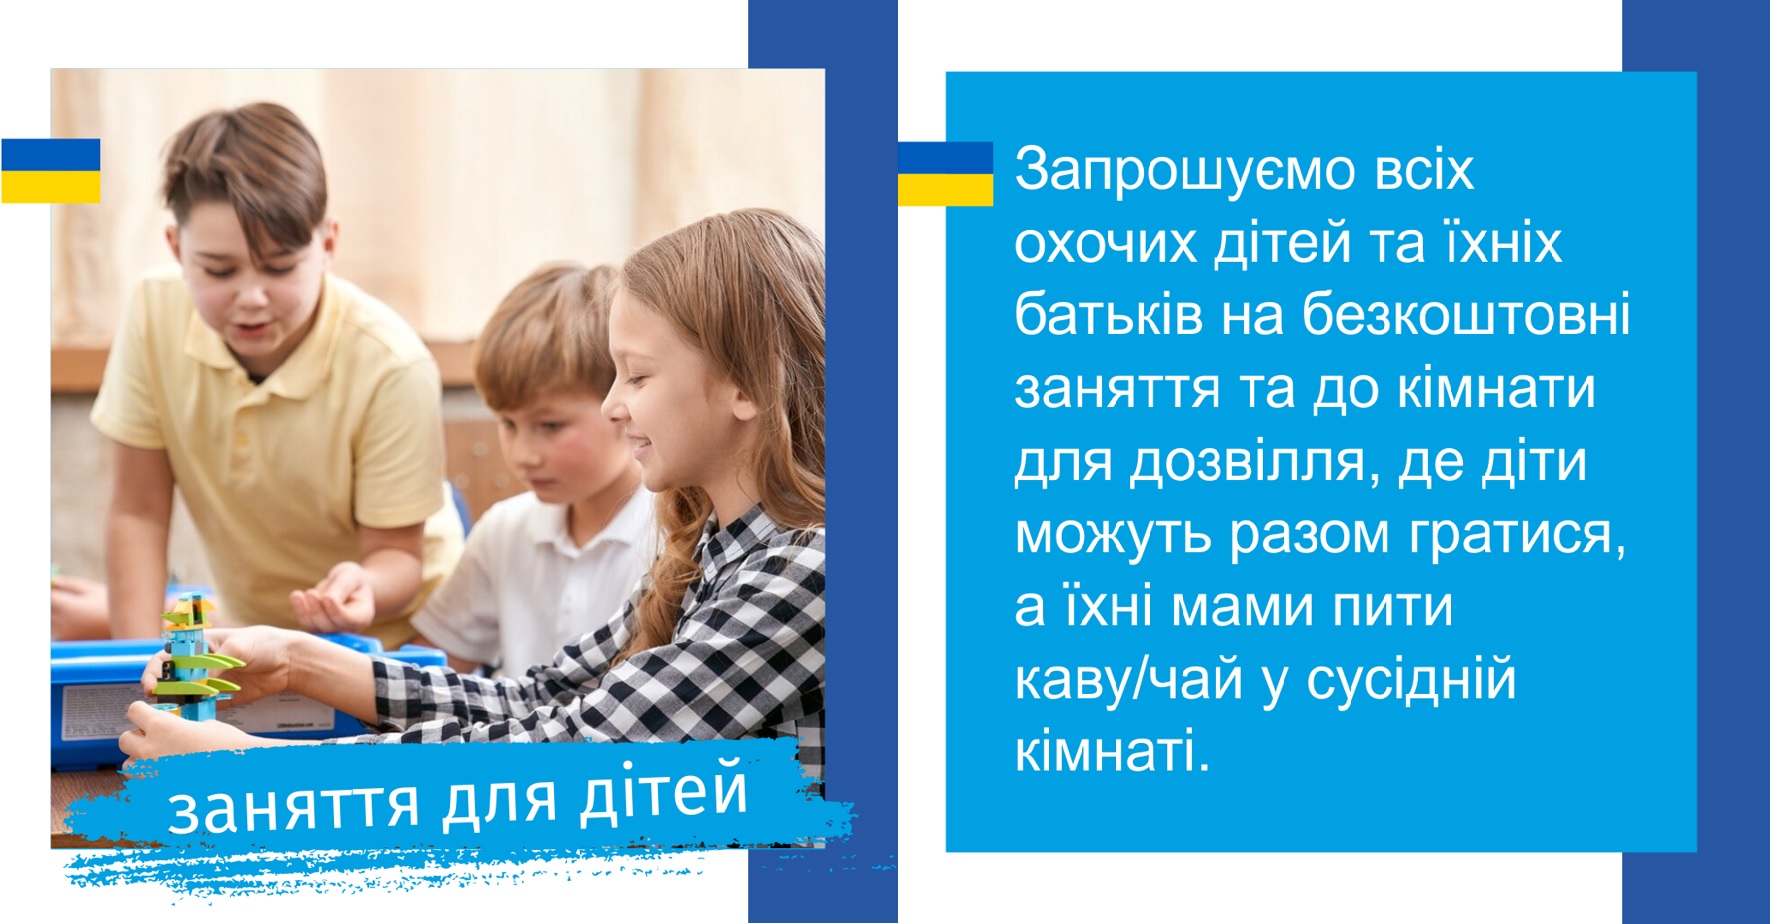 Безкоштовні заняття для сімей з України на WSG